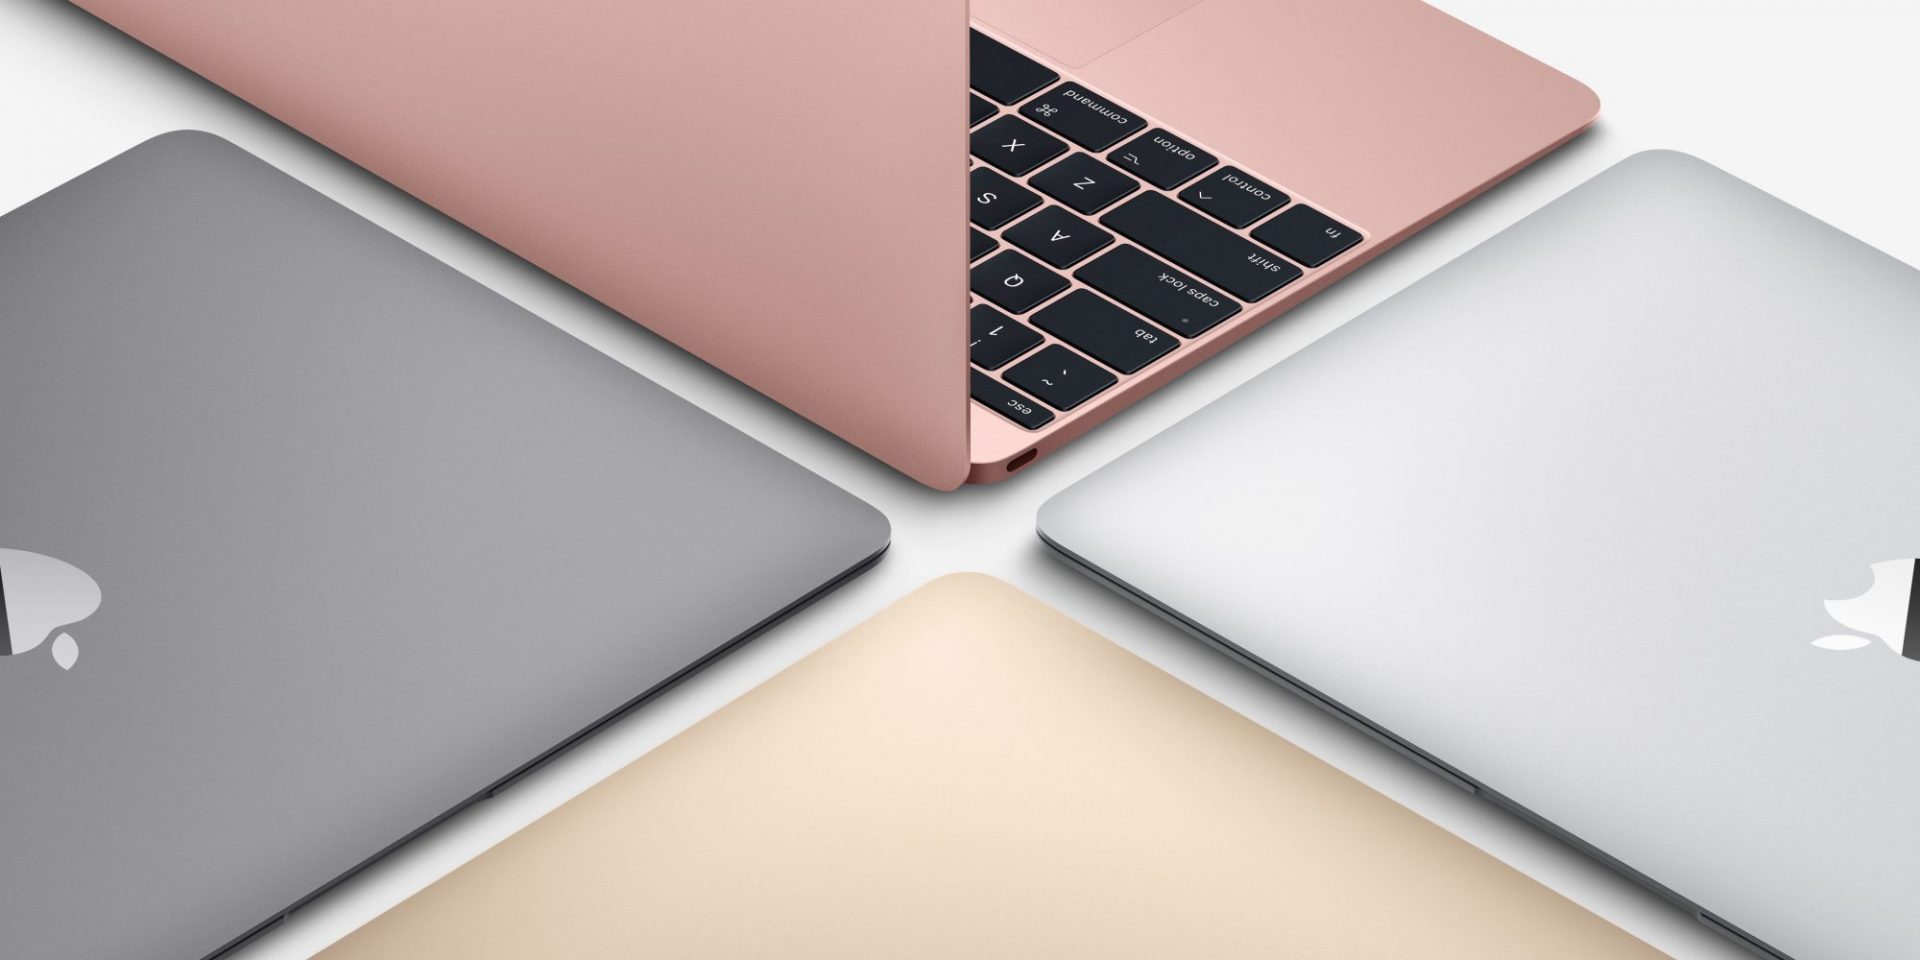 สื่อนอกตีข่าว MacBook จอ 13 นิ้วรุ่นใหม่จ่อเผยโฉมแรก มิ.ย. นี้!